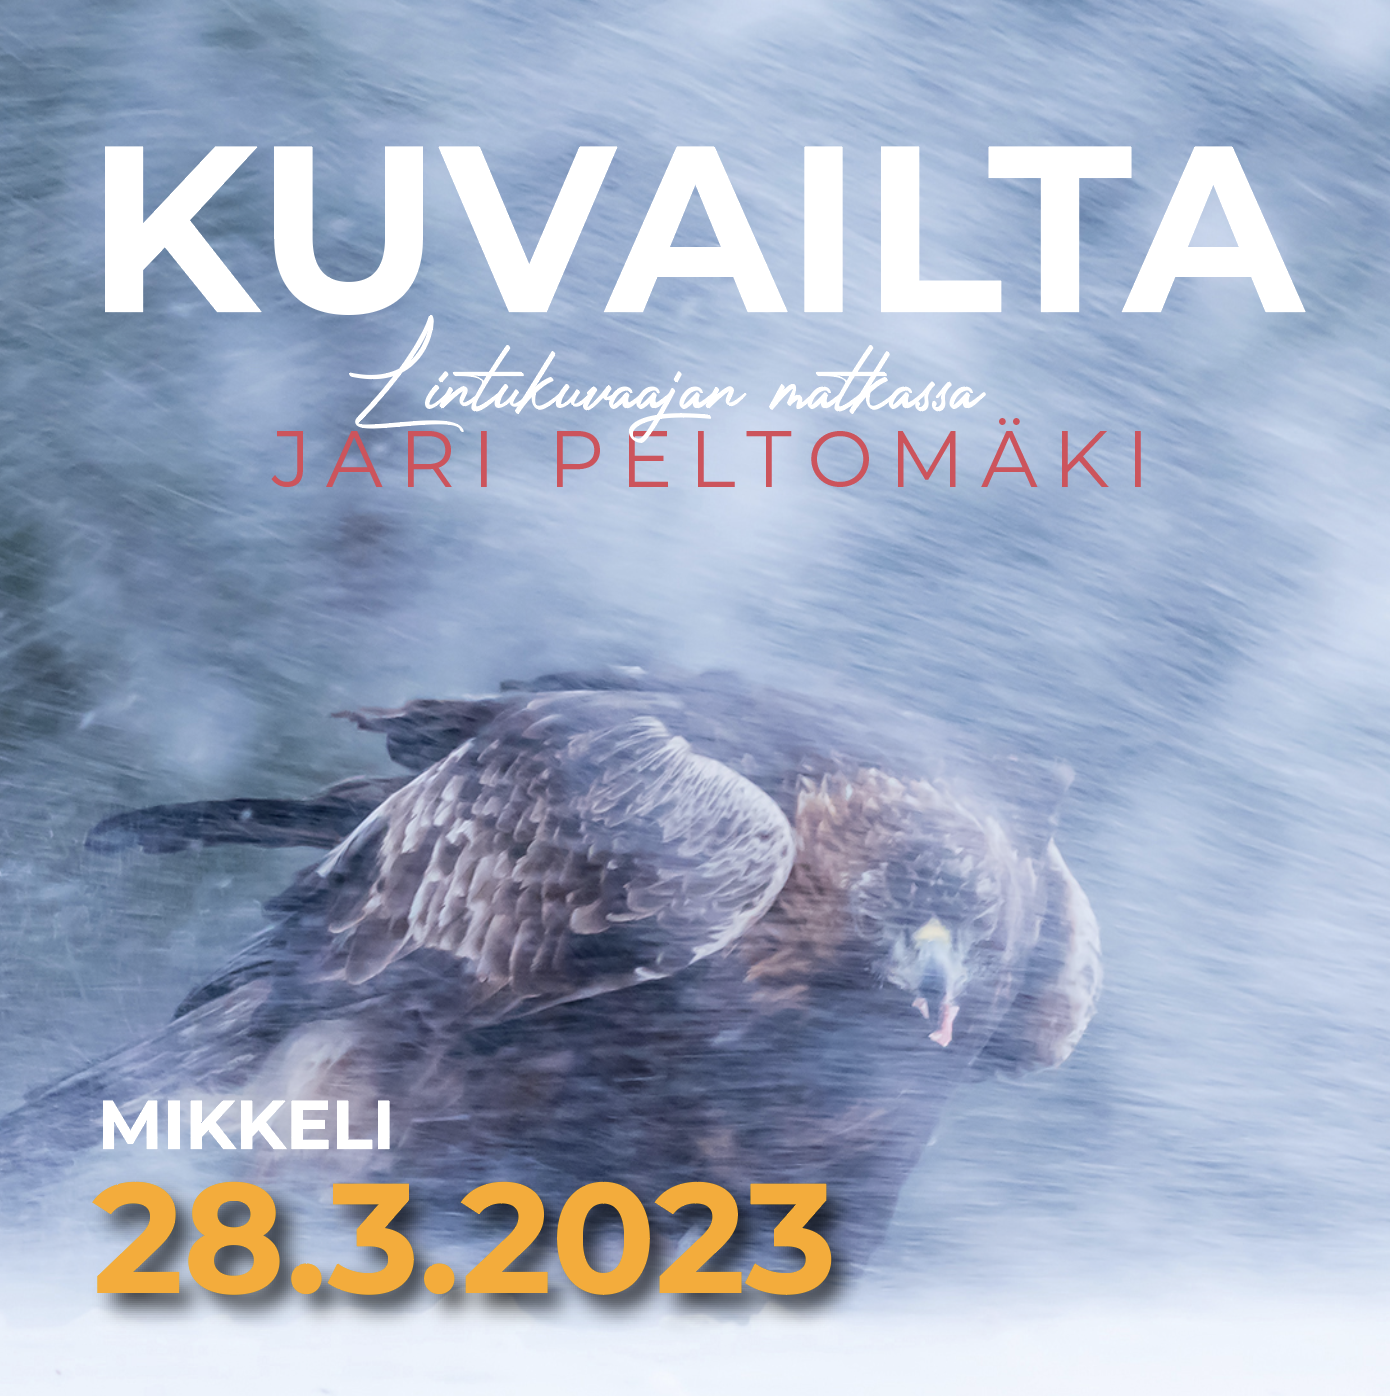 Luontokuvaajan matkassa / Jari Peltomäki - Kuvailta Mikkelissä 28.3